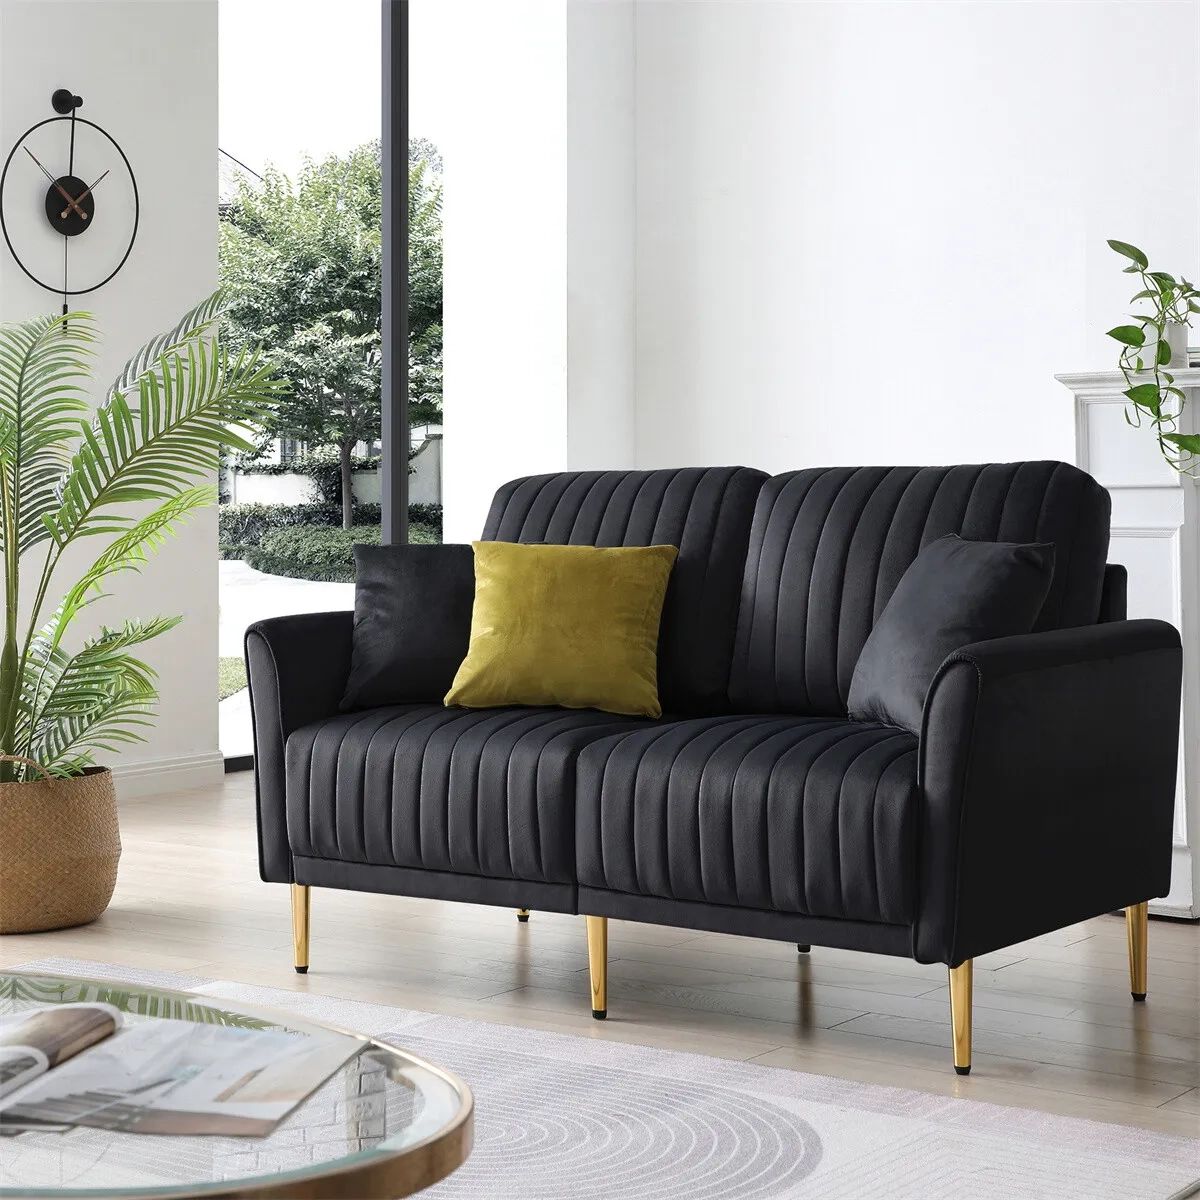 Modern Velvet 2 Seater Sofa Chanel Tufted Loveseat For Living Room Office  Black | Ebay Within 2 Seater Black Velvet Sofa Beds (View 2 of 15)